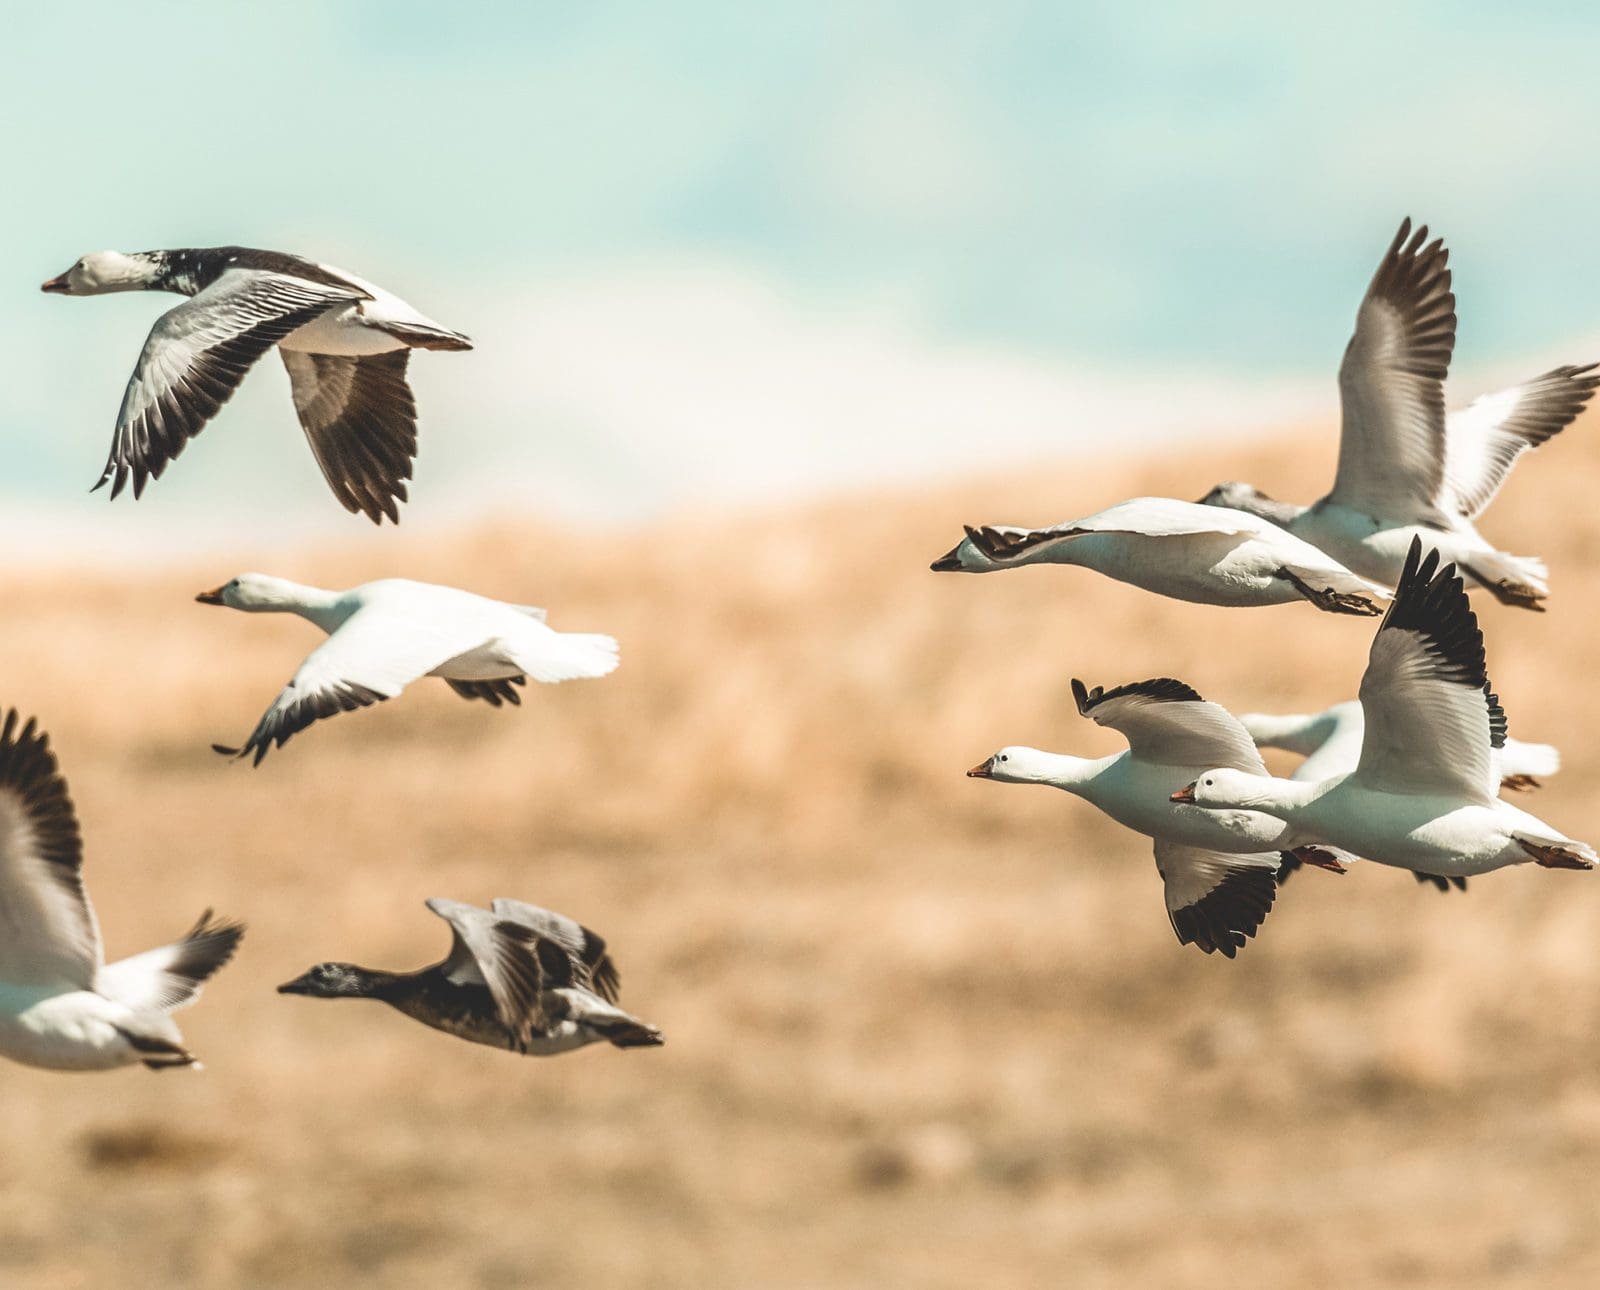 Snow geese take flight.